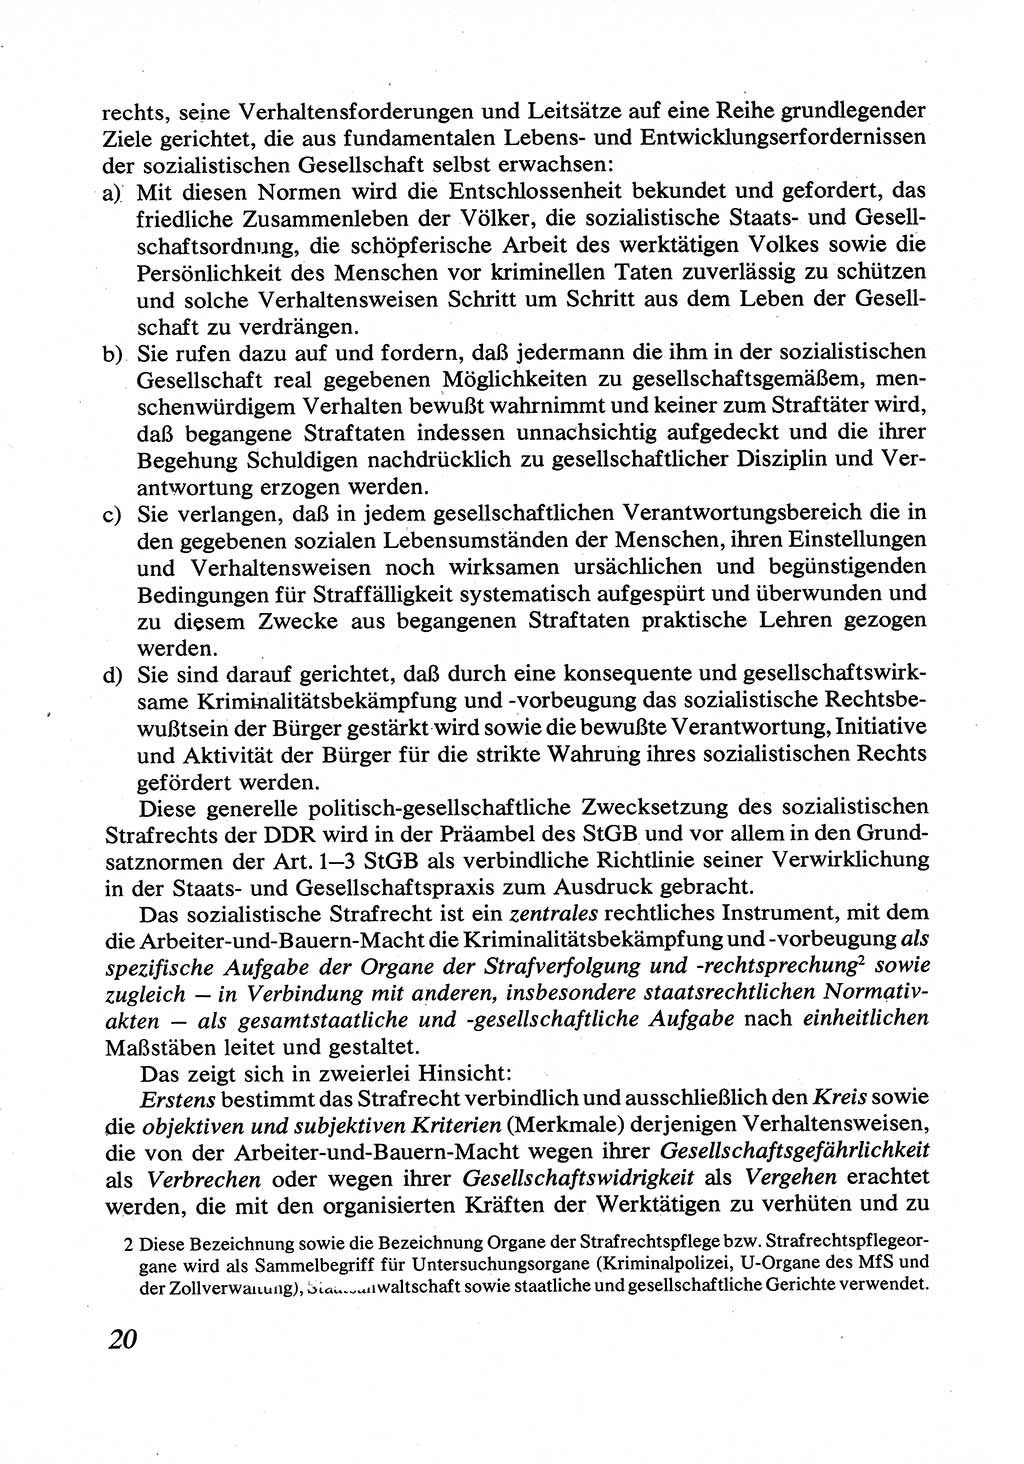 Strafrecht [Deutsche Demokratische Republik (DDR)], Allgemeiner Teil, Lehrbuch 1976, Seite 20 (Strafr. DDR AT Lb. 1976, S. 20)